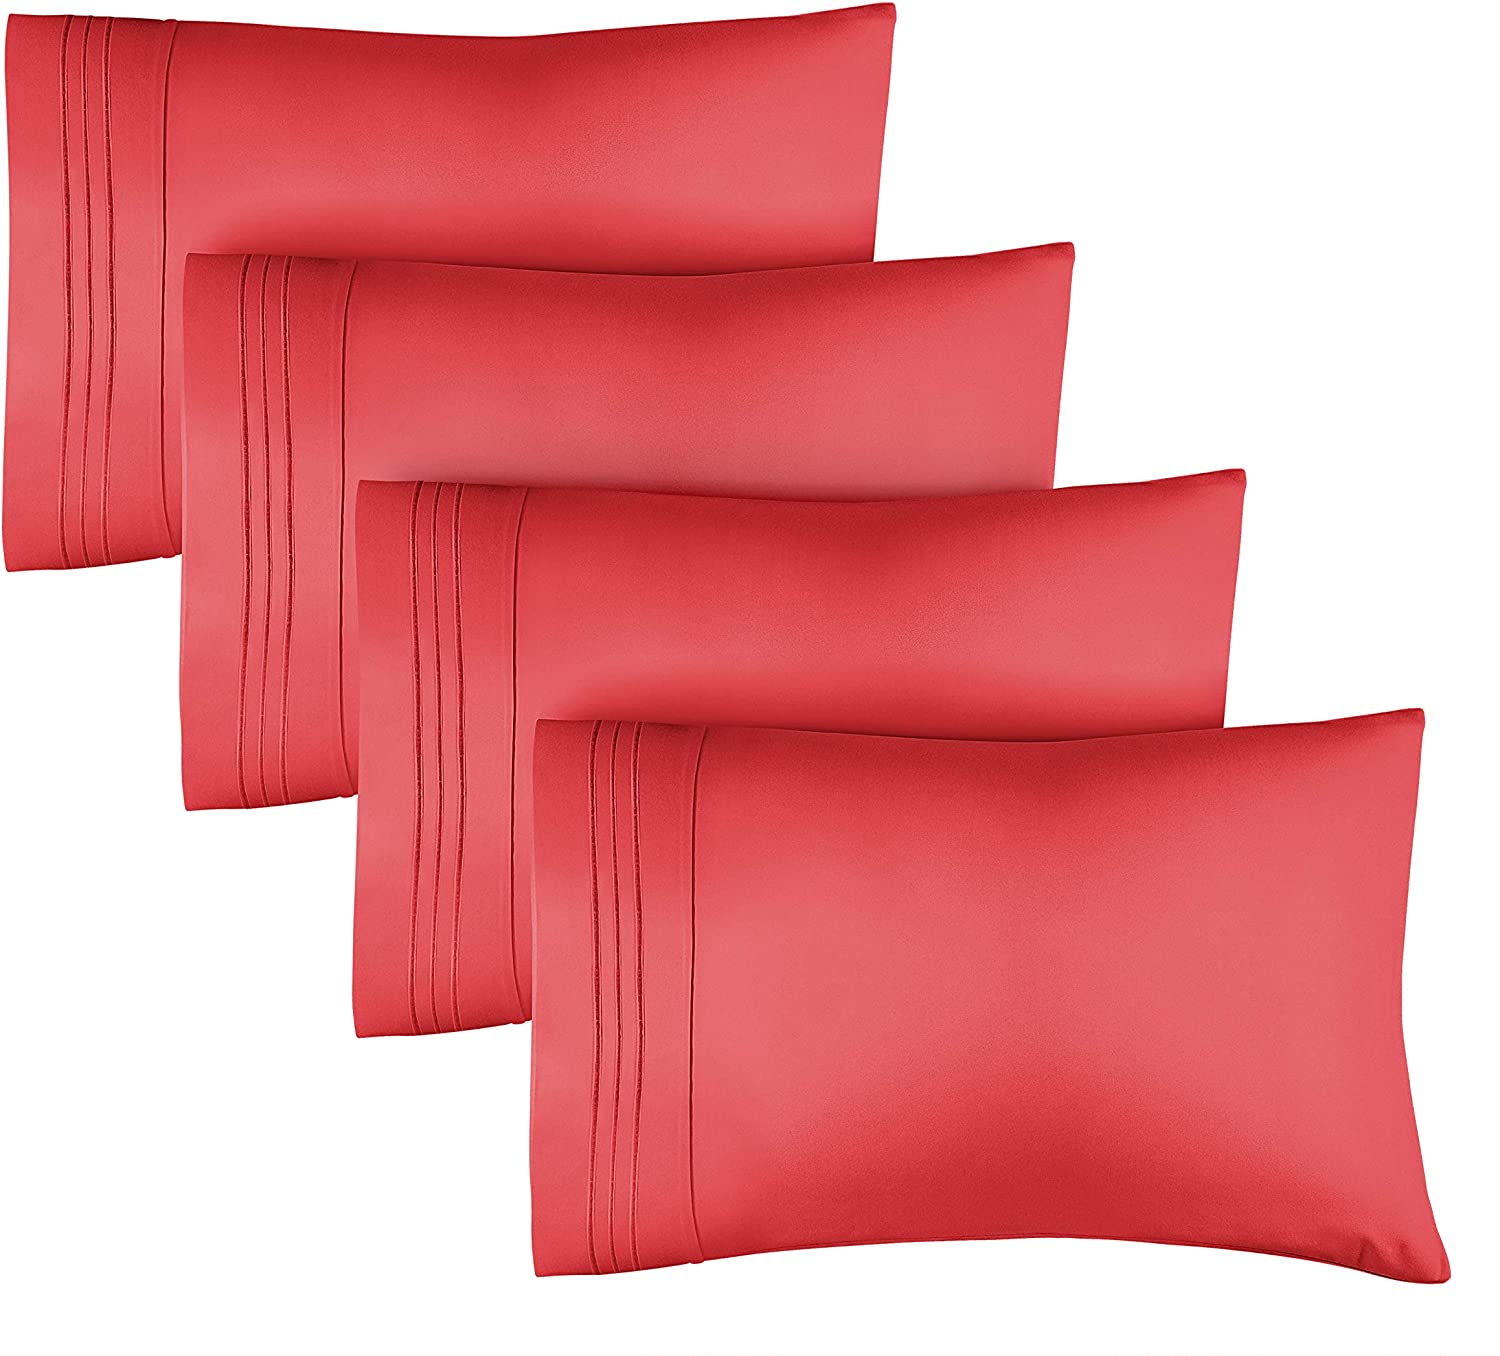 tes 4 Pillowcase Set - Red